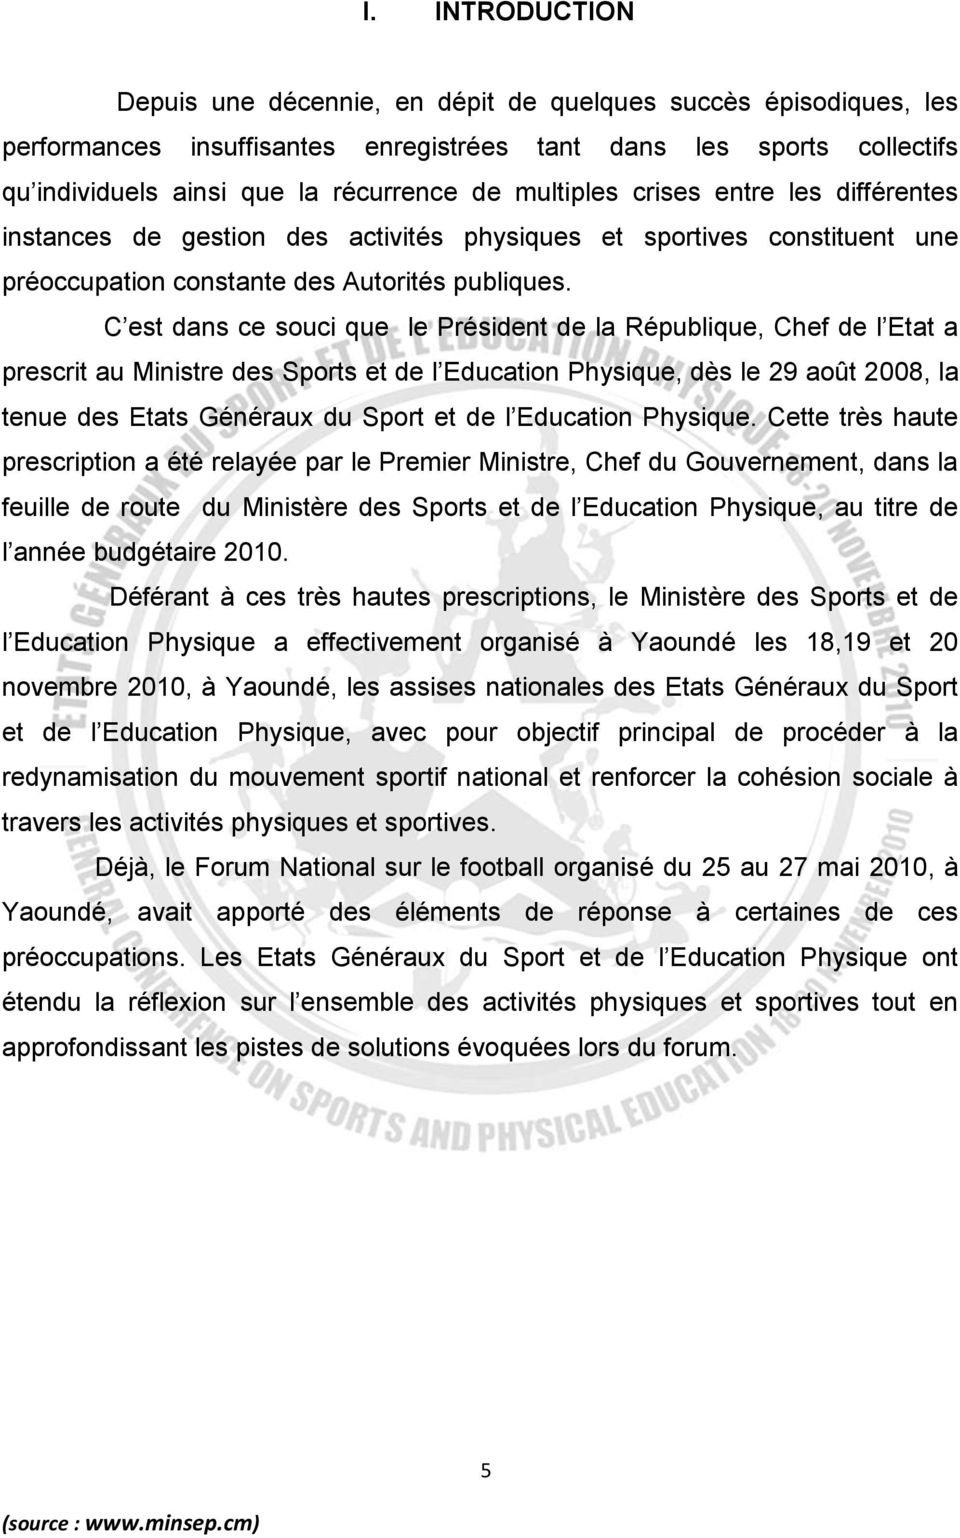 C est dans ce souci que le Président de la République, Chef de l Etat a prescrit au Ministre des Sports et de l Education Physique, dès le 29 août 2008, la tenue des Etats Généraux du Sport et de l